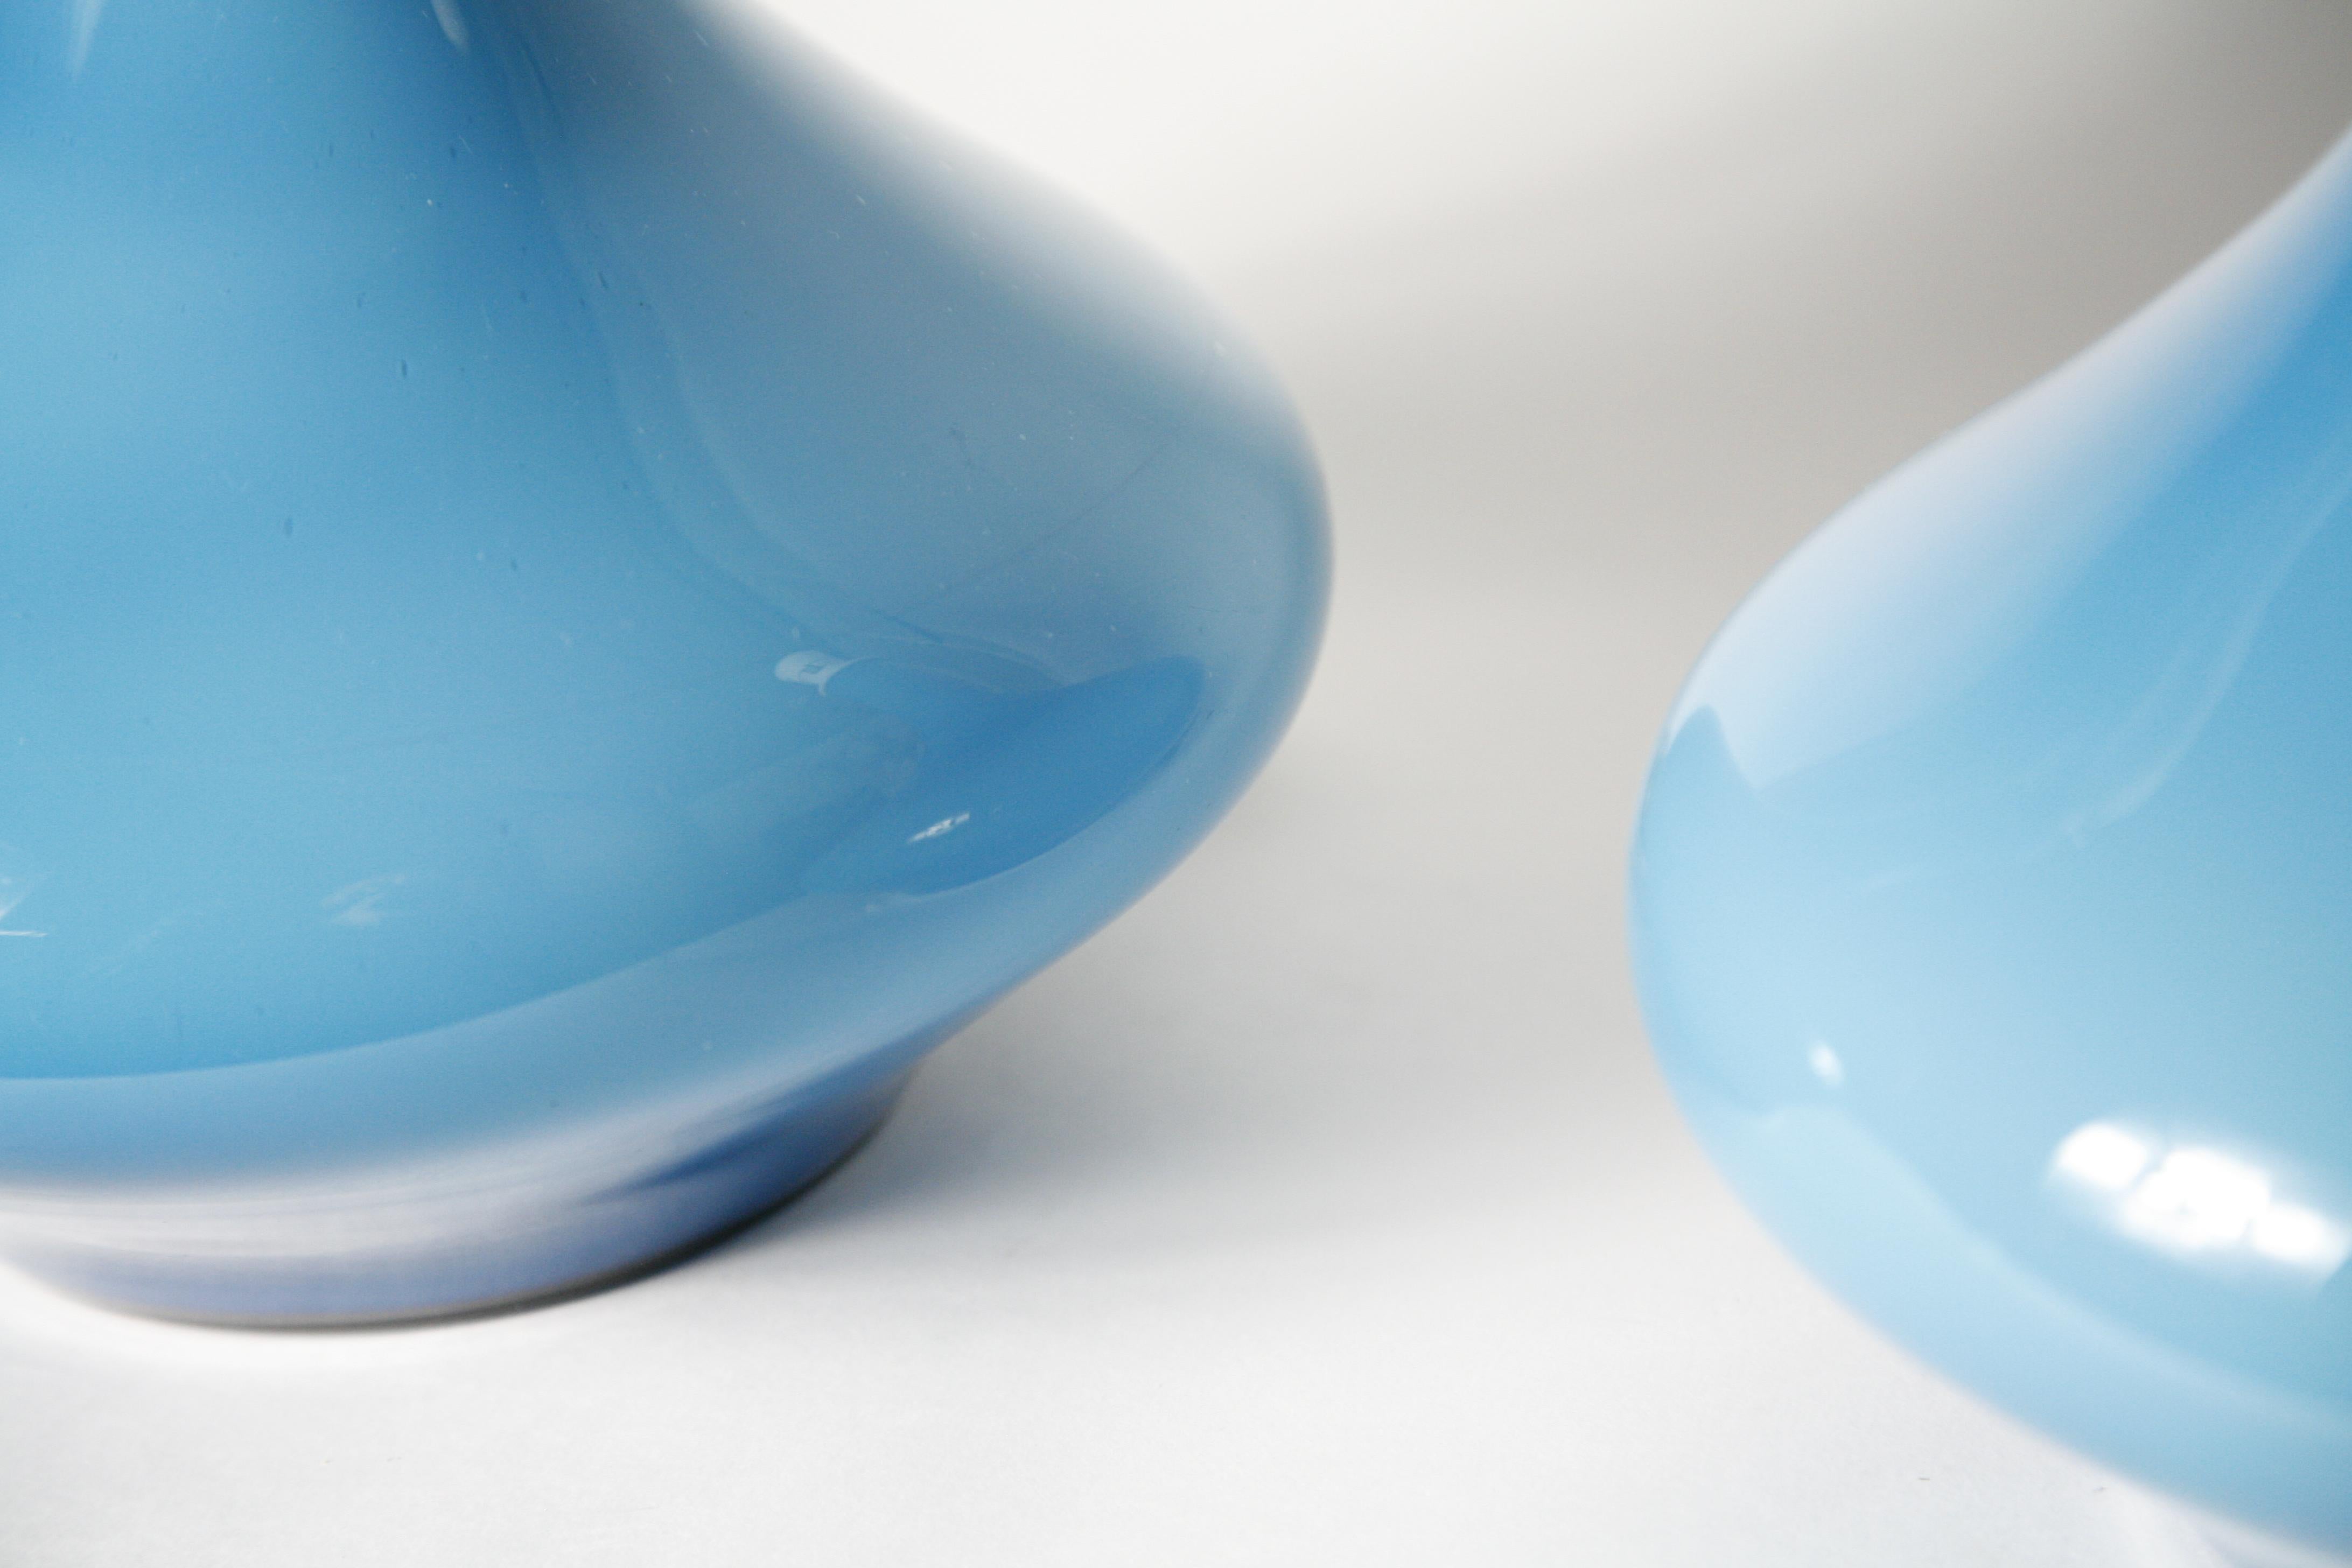 Paire de lampes en verre bleu clair du verrier Holmegaard, années 1970.Cette paire est en excellent état.
Exceptionnellement chiches dans un verre opalin bleu océan frais, ces grandes lampes Holmegaard sont exceptionnelles.
Les abat-jour ne sont